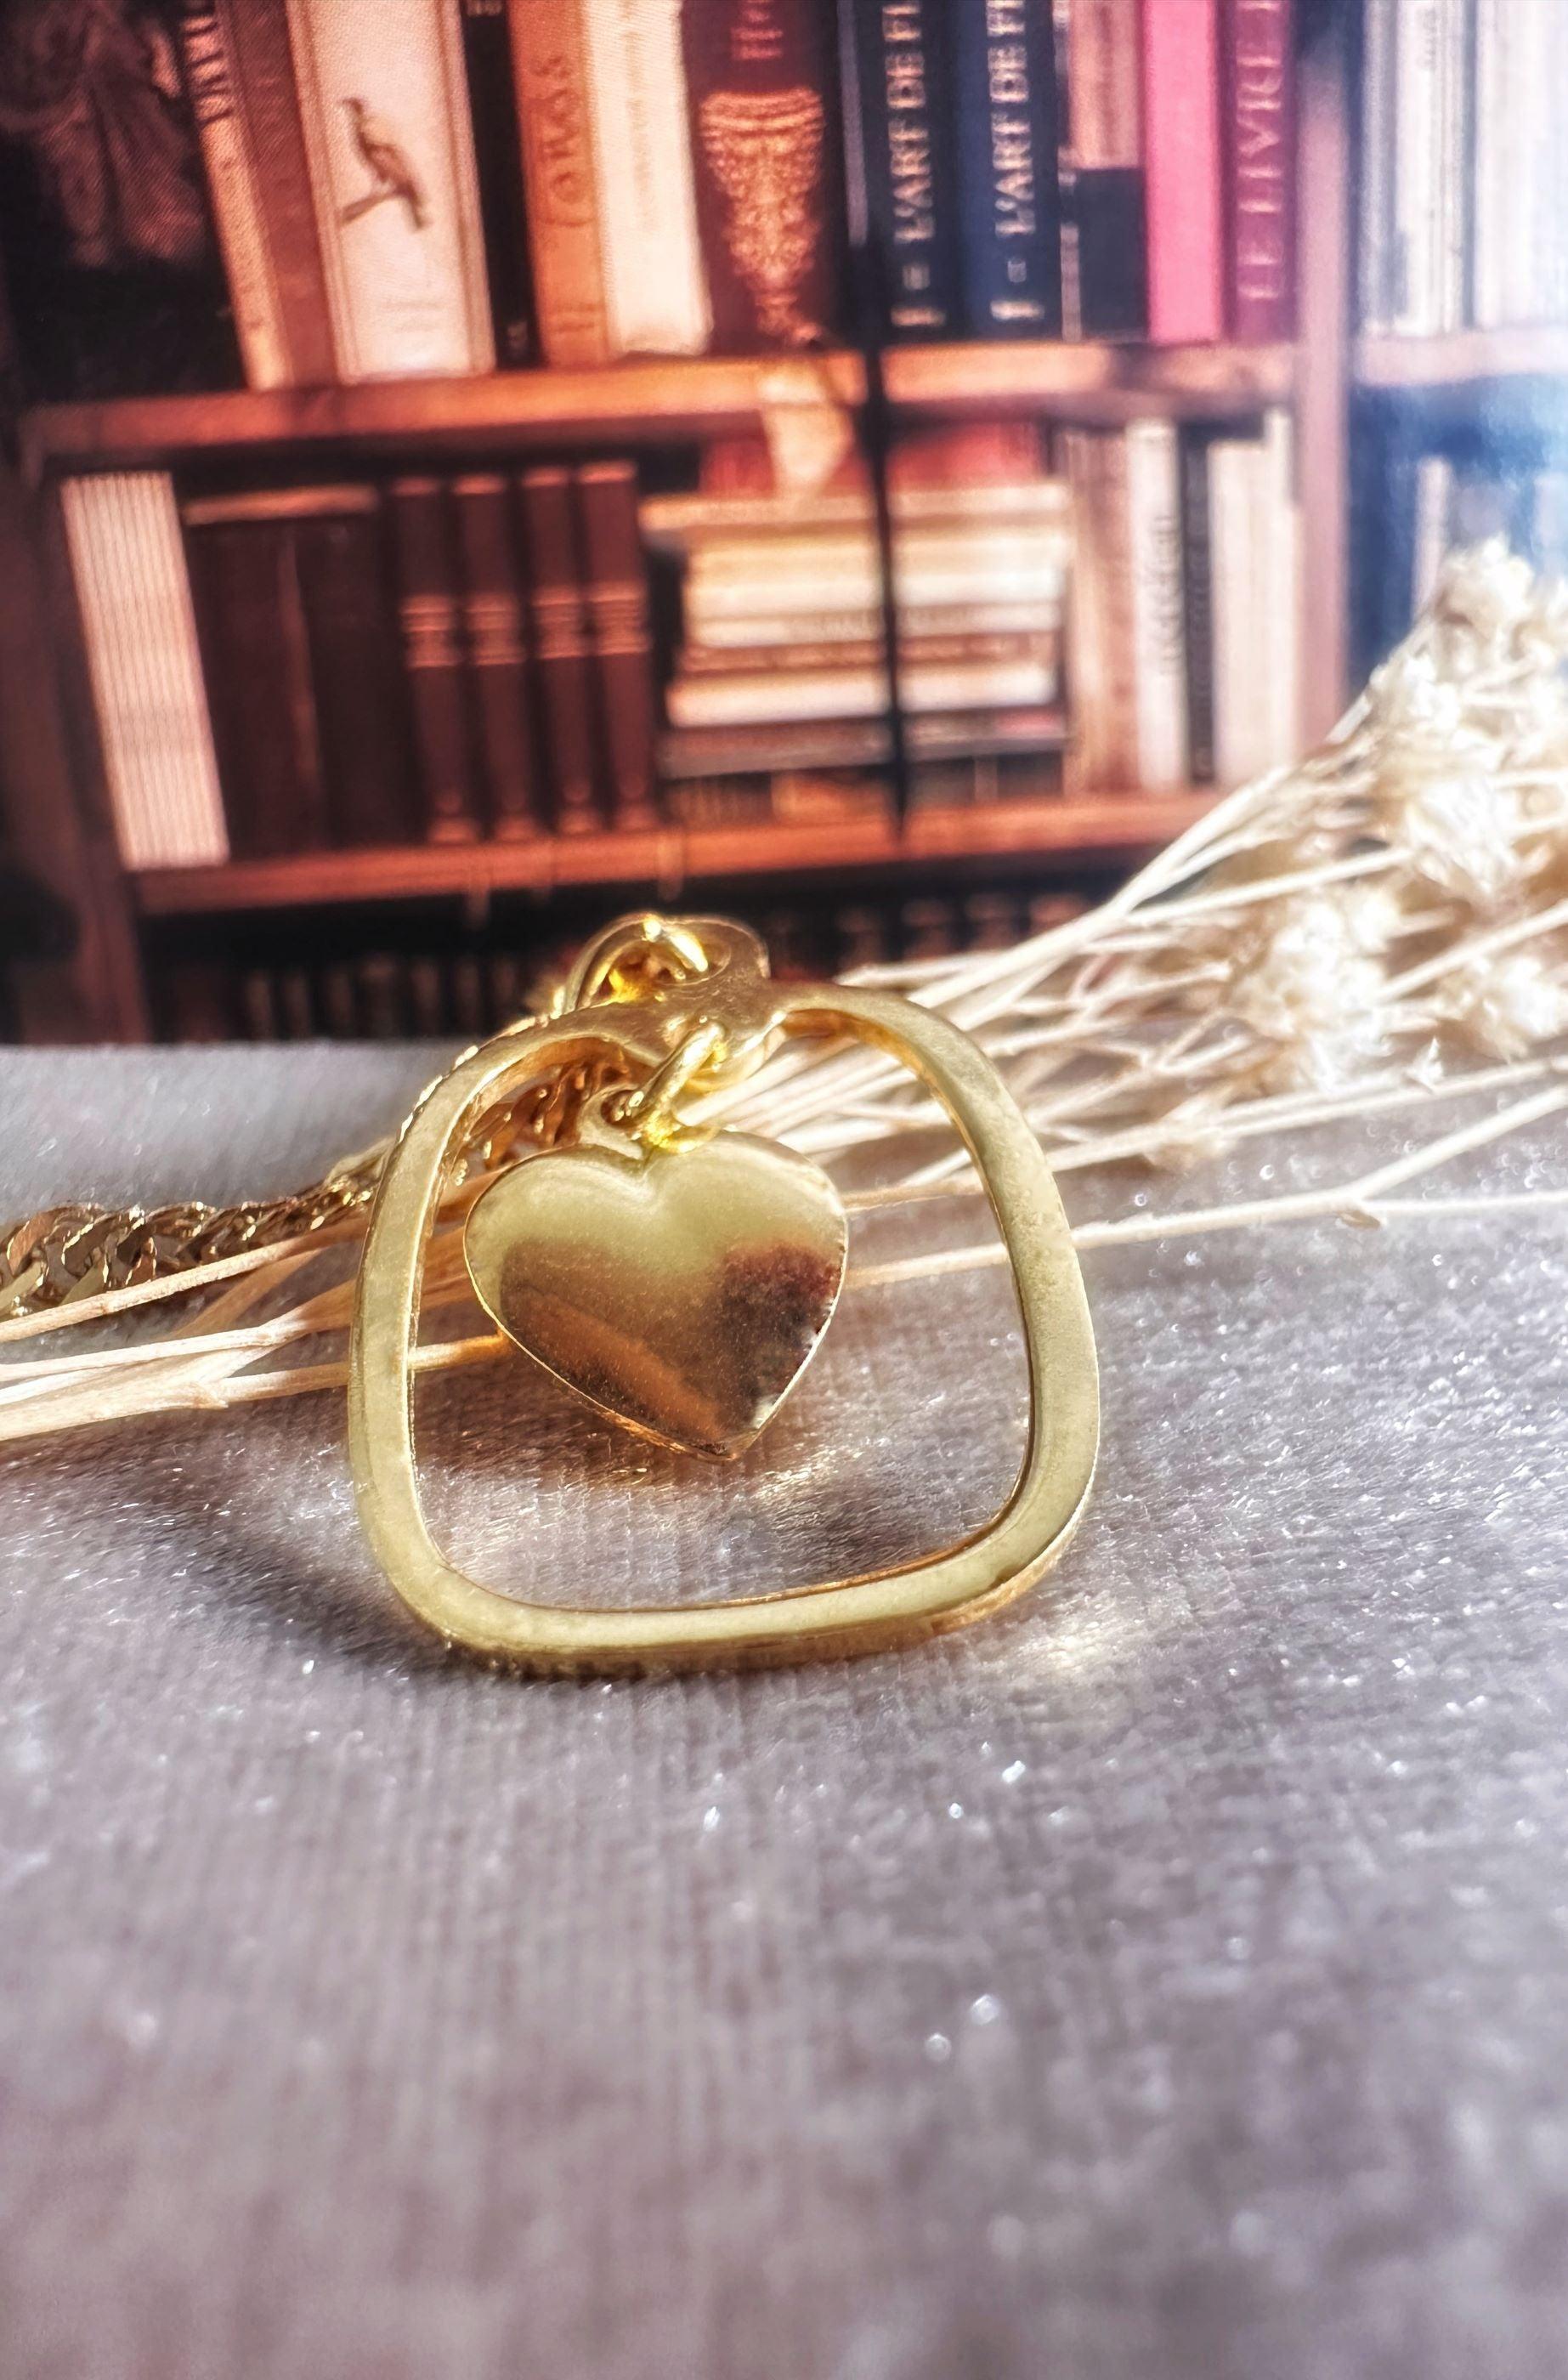 Pendentif "Bel Amour", Cœur encadré en or 18 carats - Maison Gabriel